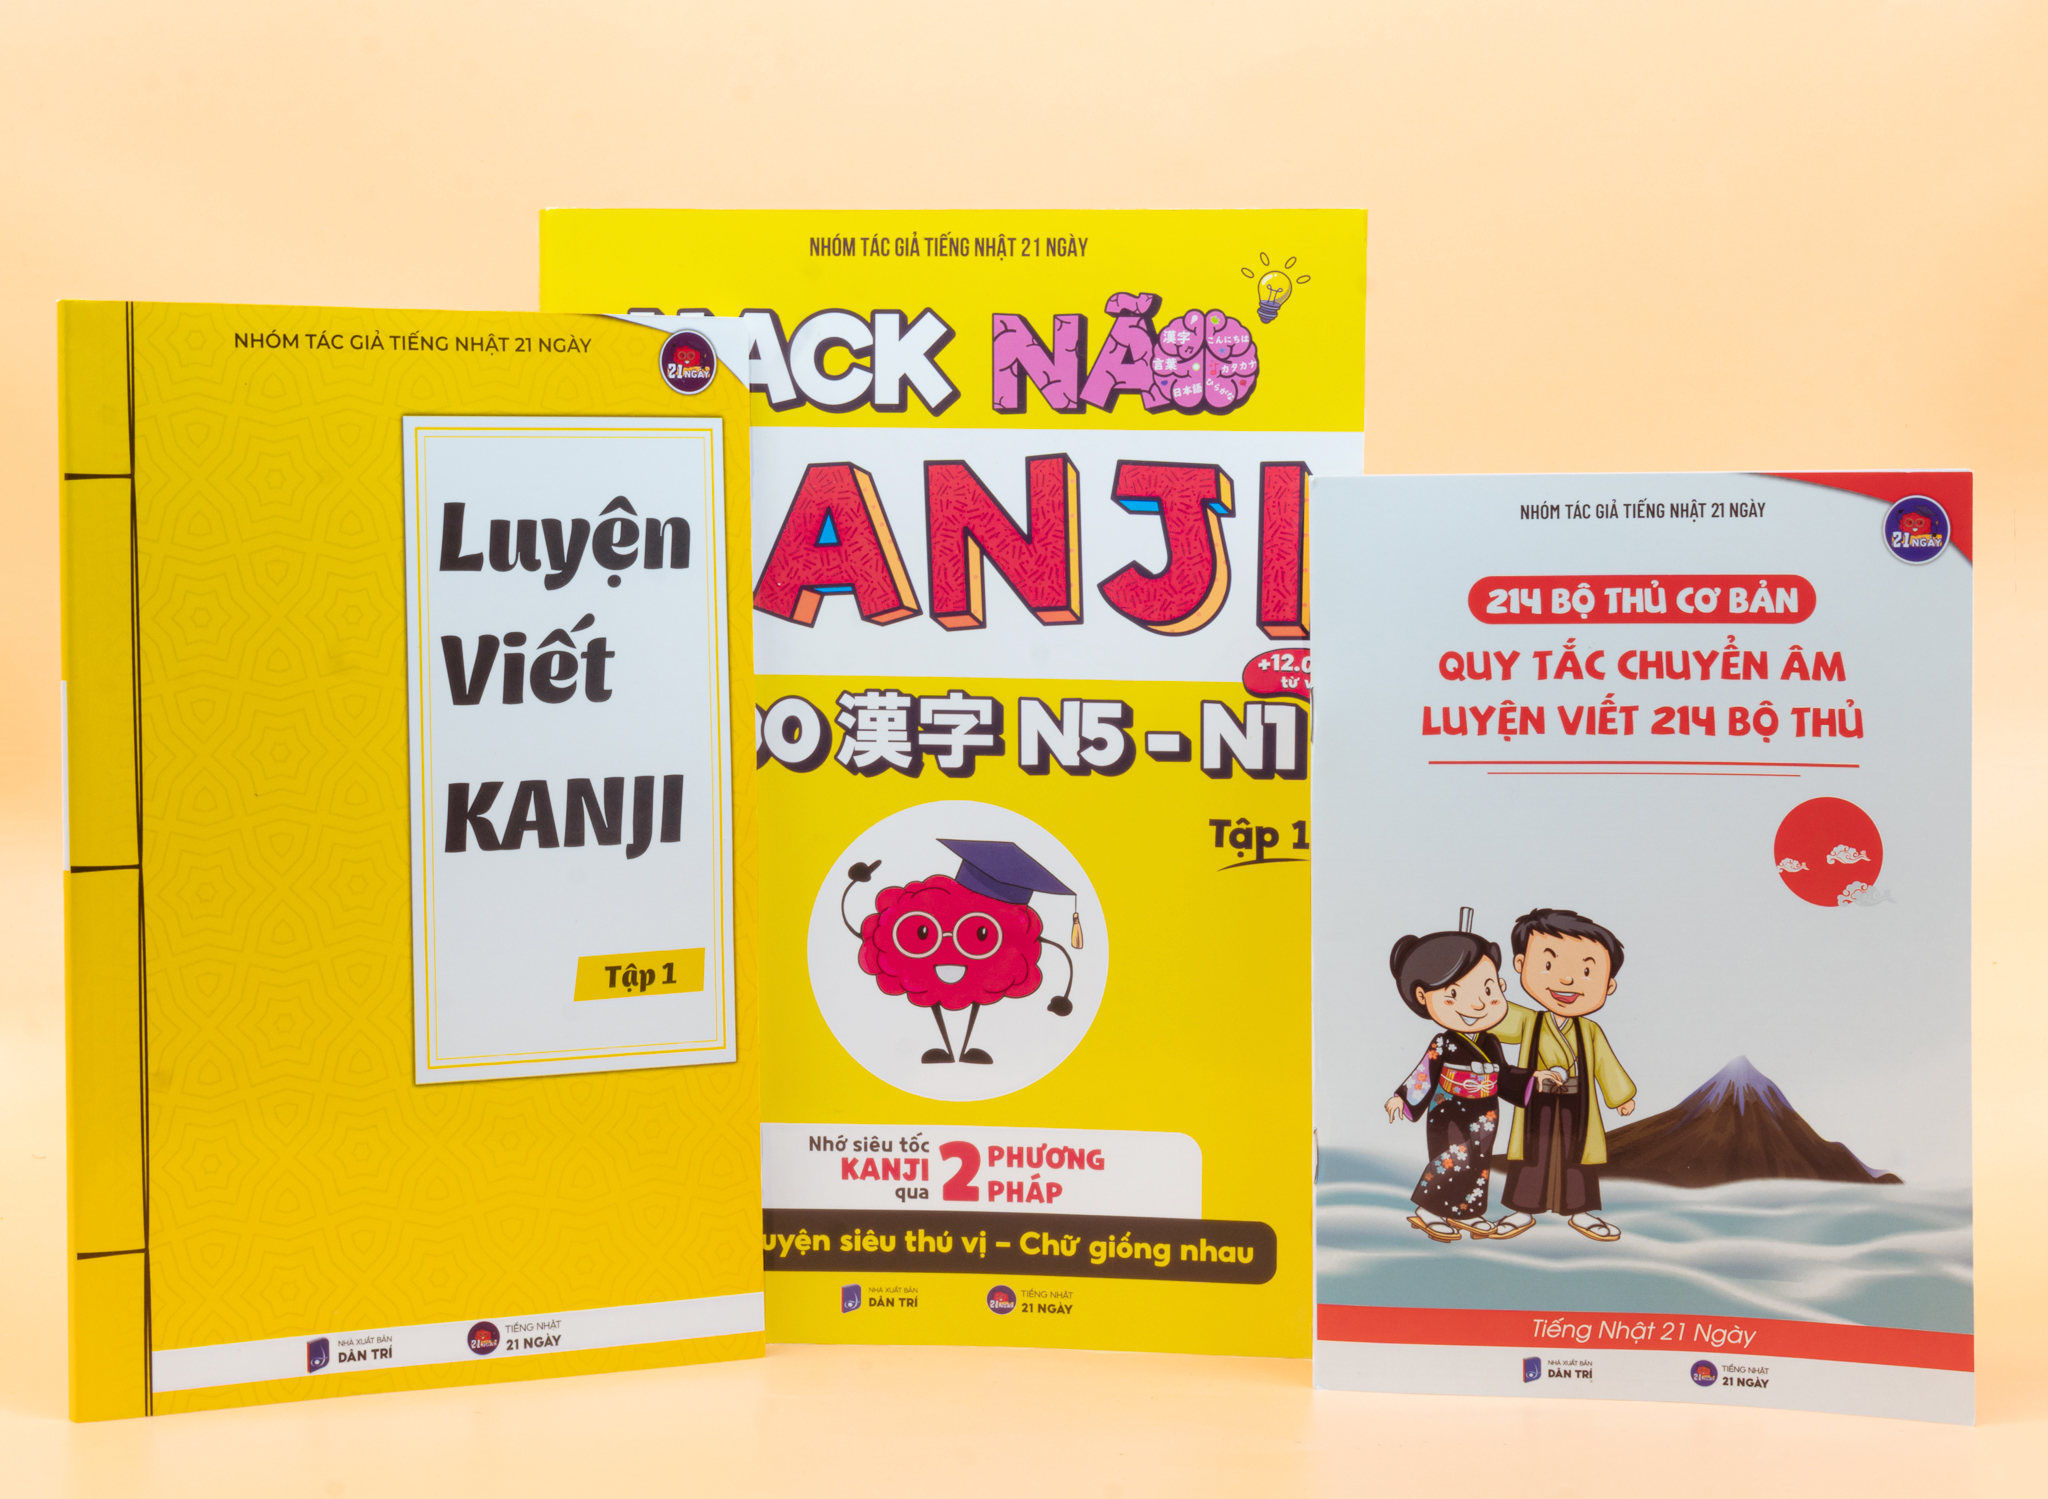 Hack Não Kanji Tập 1- Ghi Nhớ Kanji Theo Câu Chuyện Thú Vị Và Bộ Giống Nhau